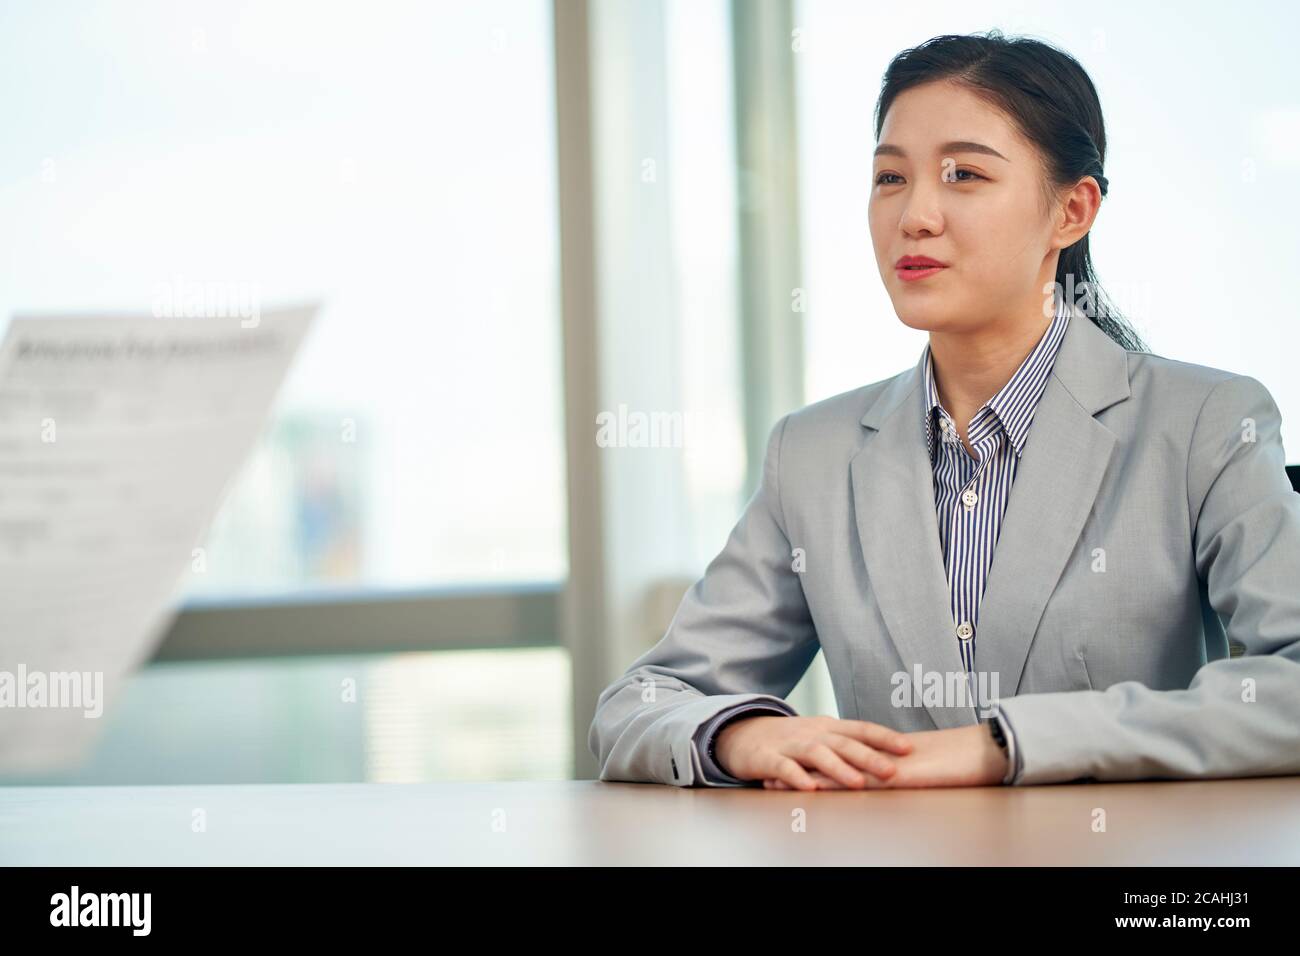 jeune femme asiatique à la recherche d'un emploi discutant avec l'intervieweur pendant l'entrevue d'emploi Banque D'Images